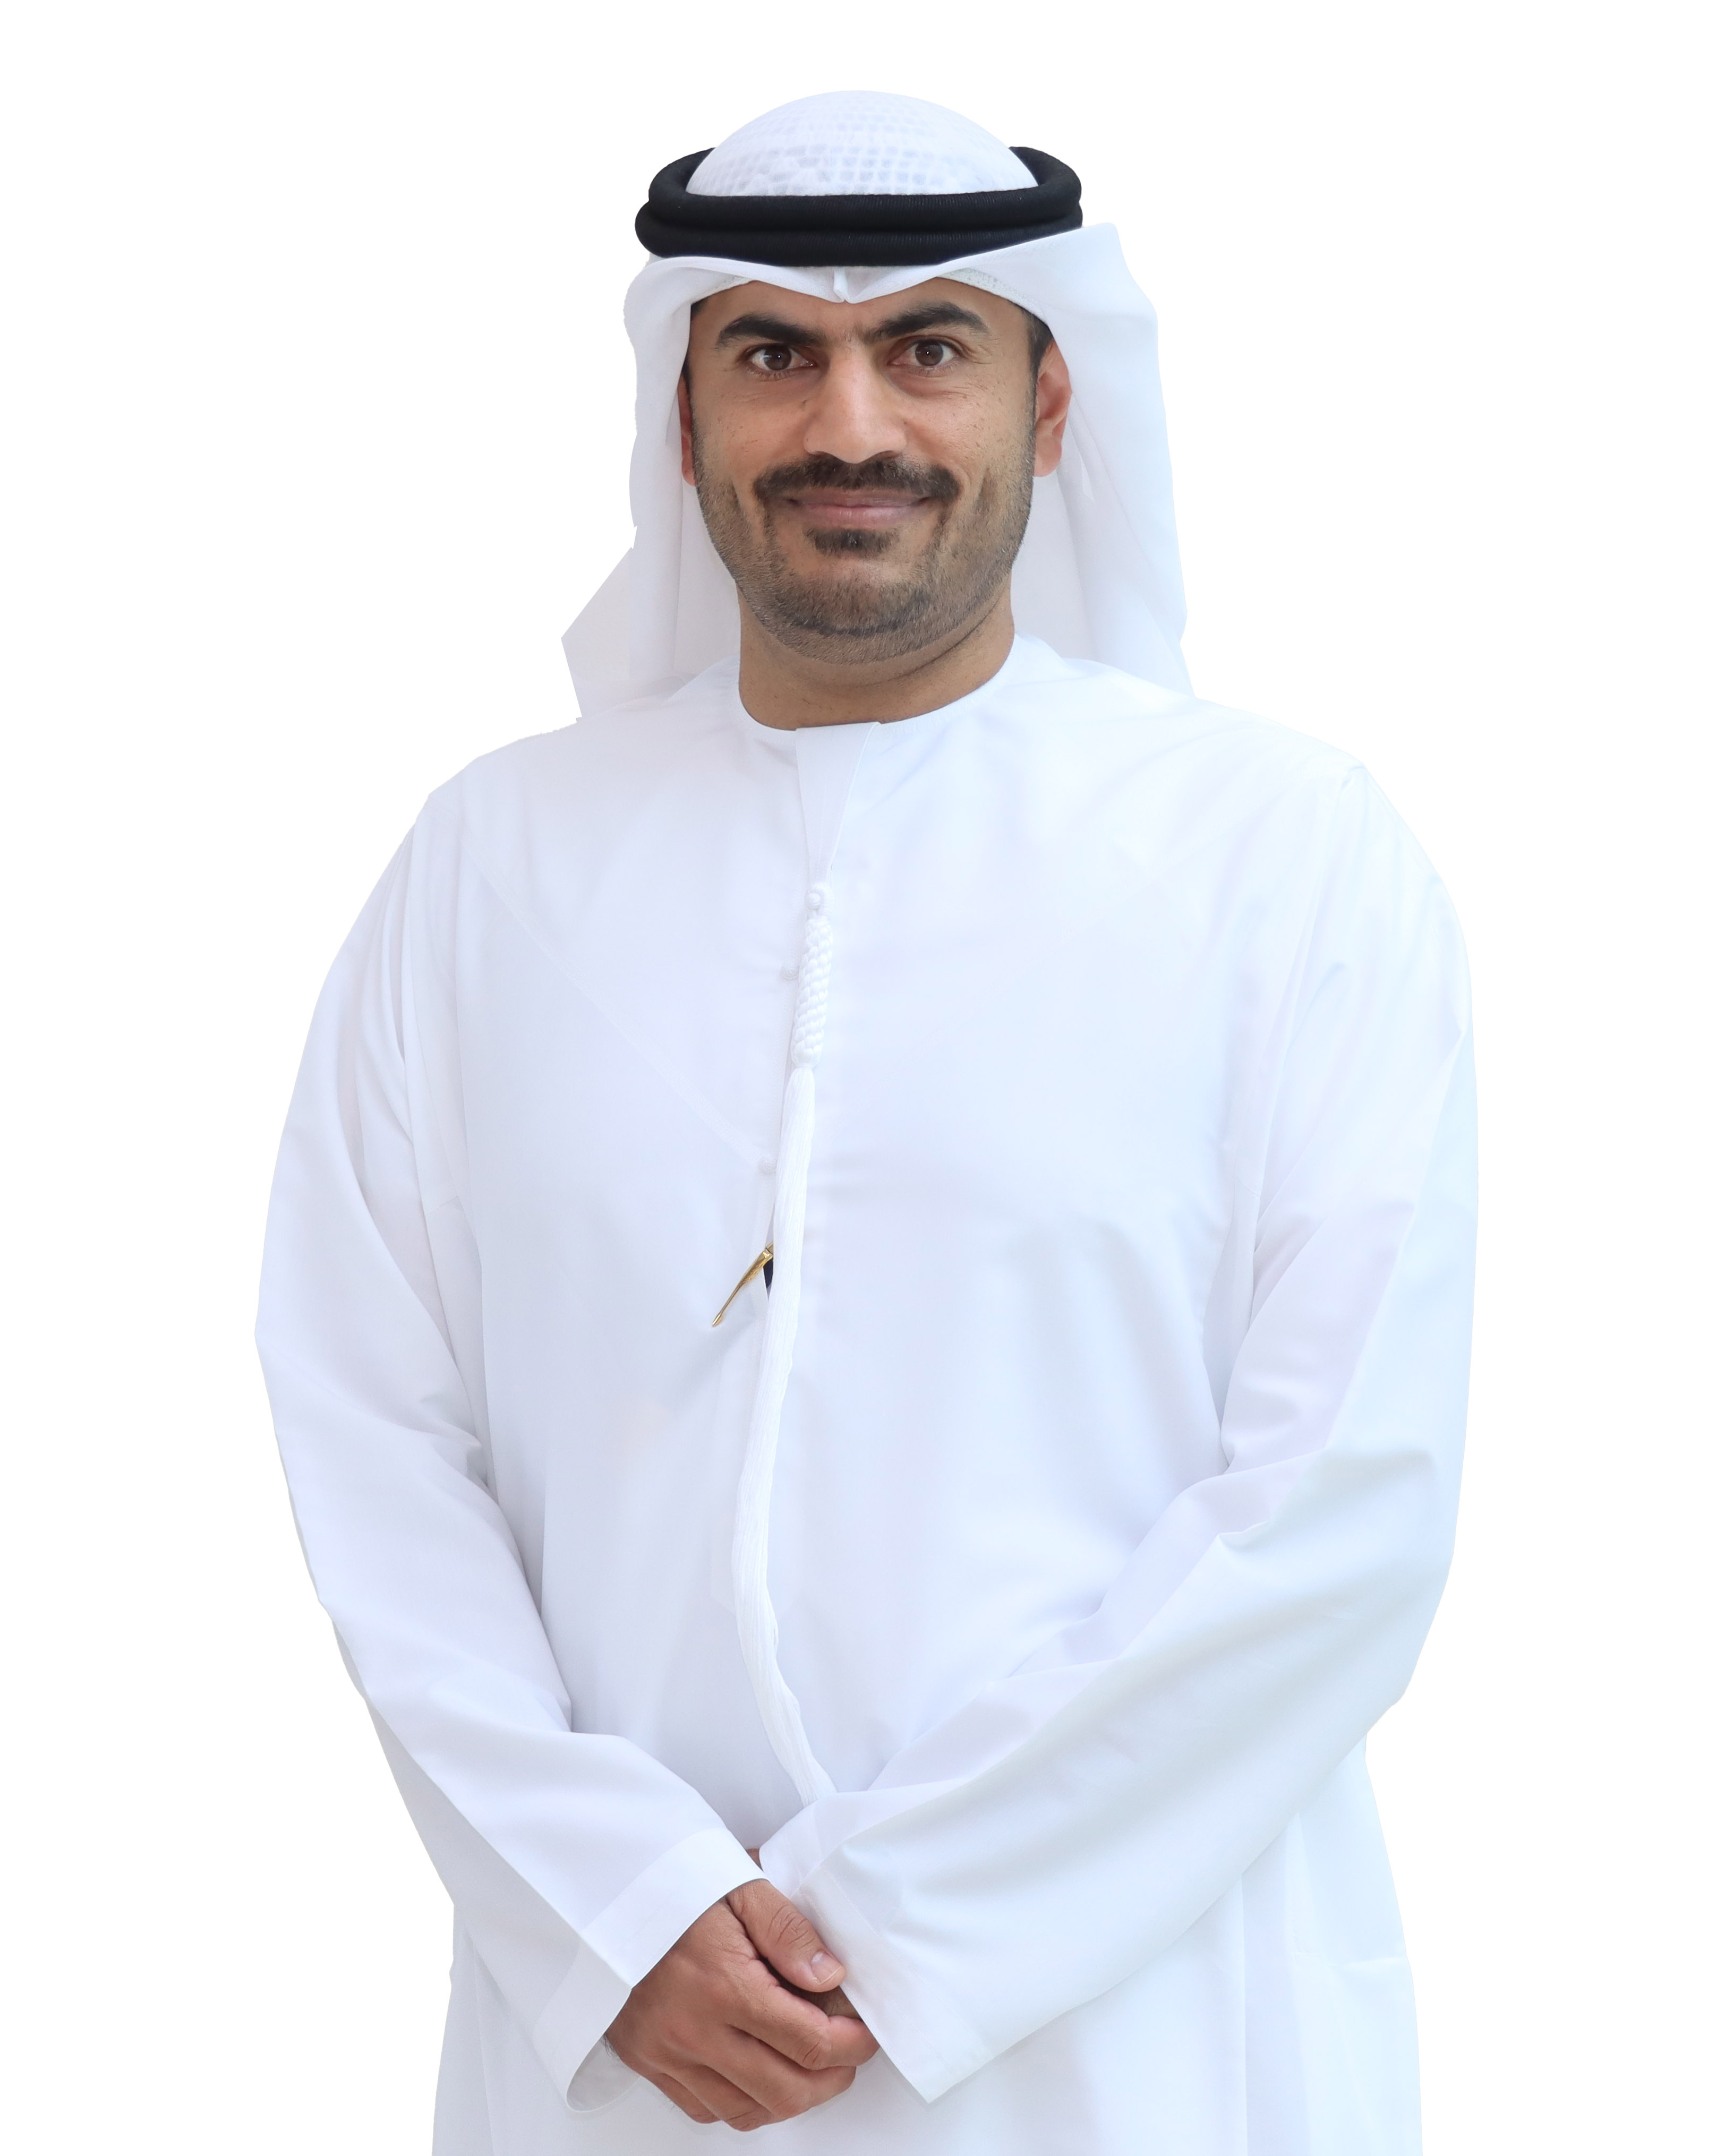 Dr. Mohamed Al Ali